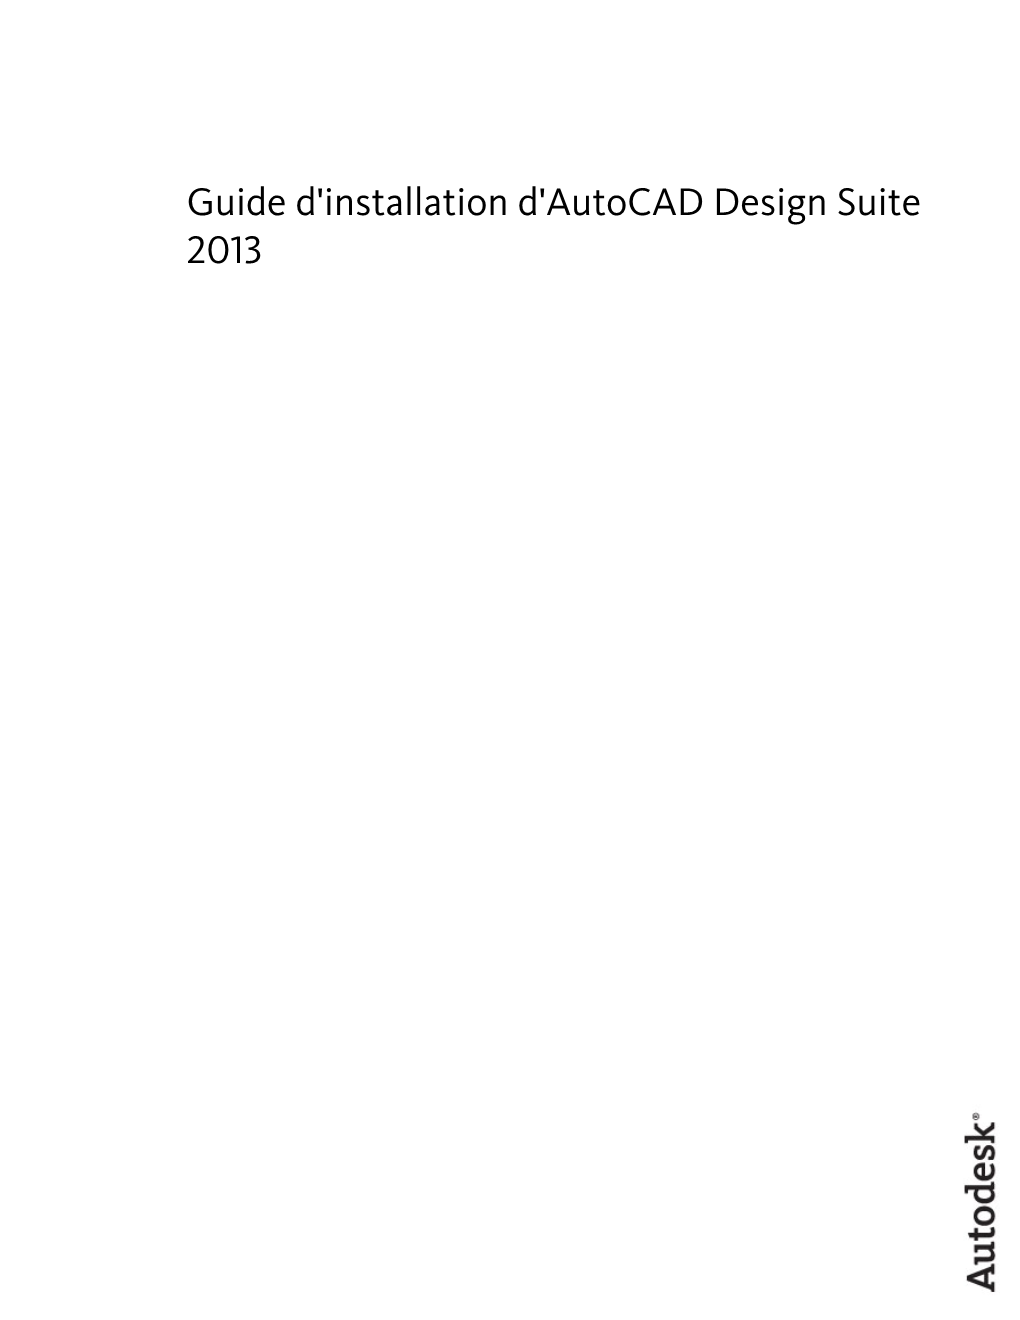 Guide D'installation D'autocad Design Suite 2013 © 2012 Autodesk, Inc